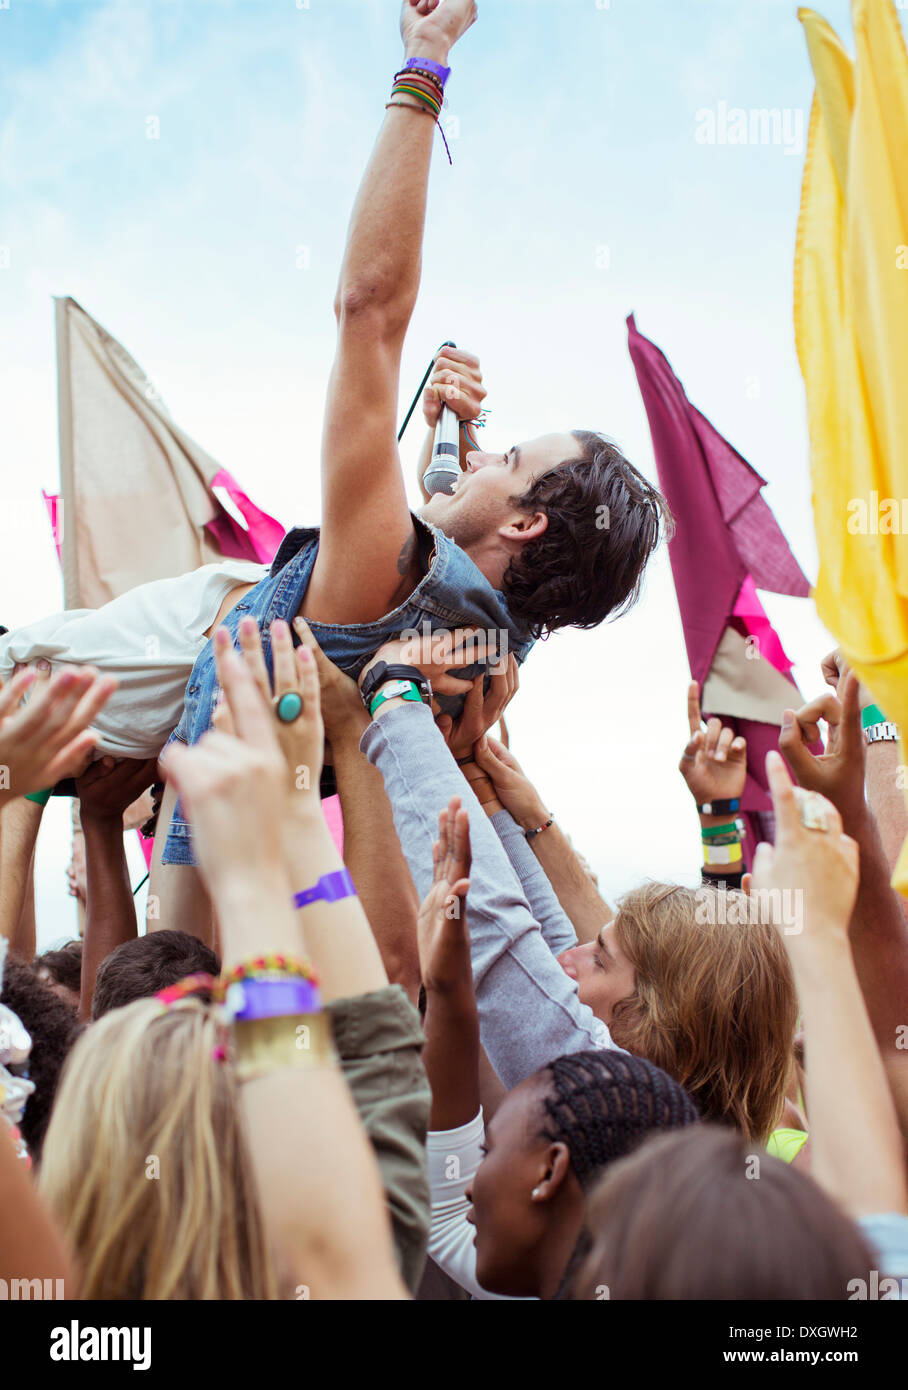 Multitud de ejecutante en el festival de música de surf Foto de stock